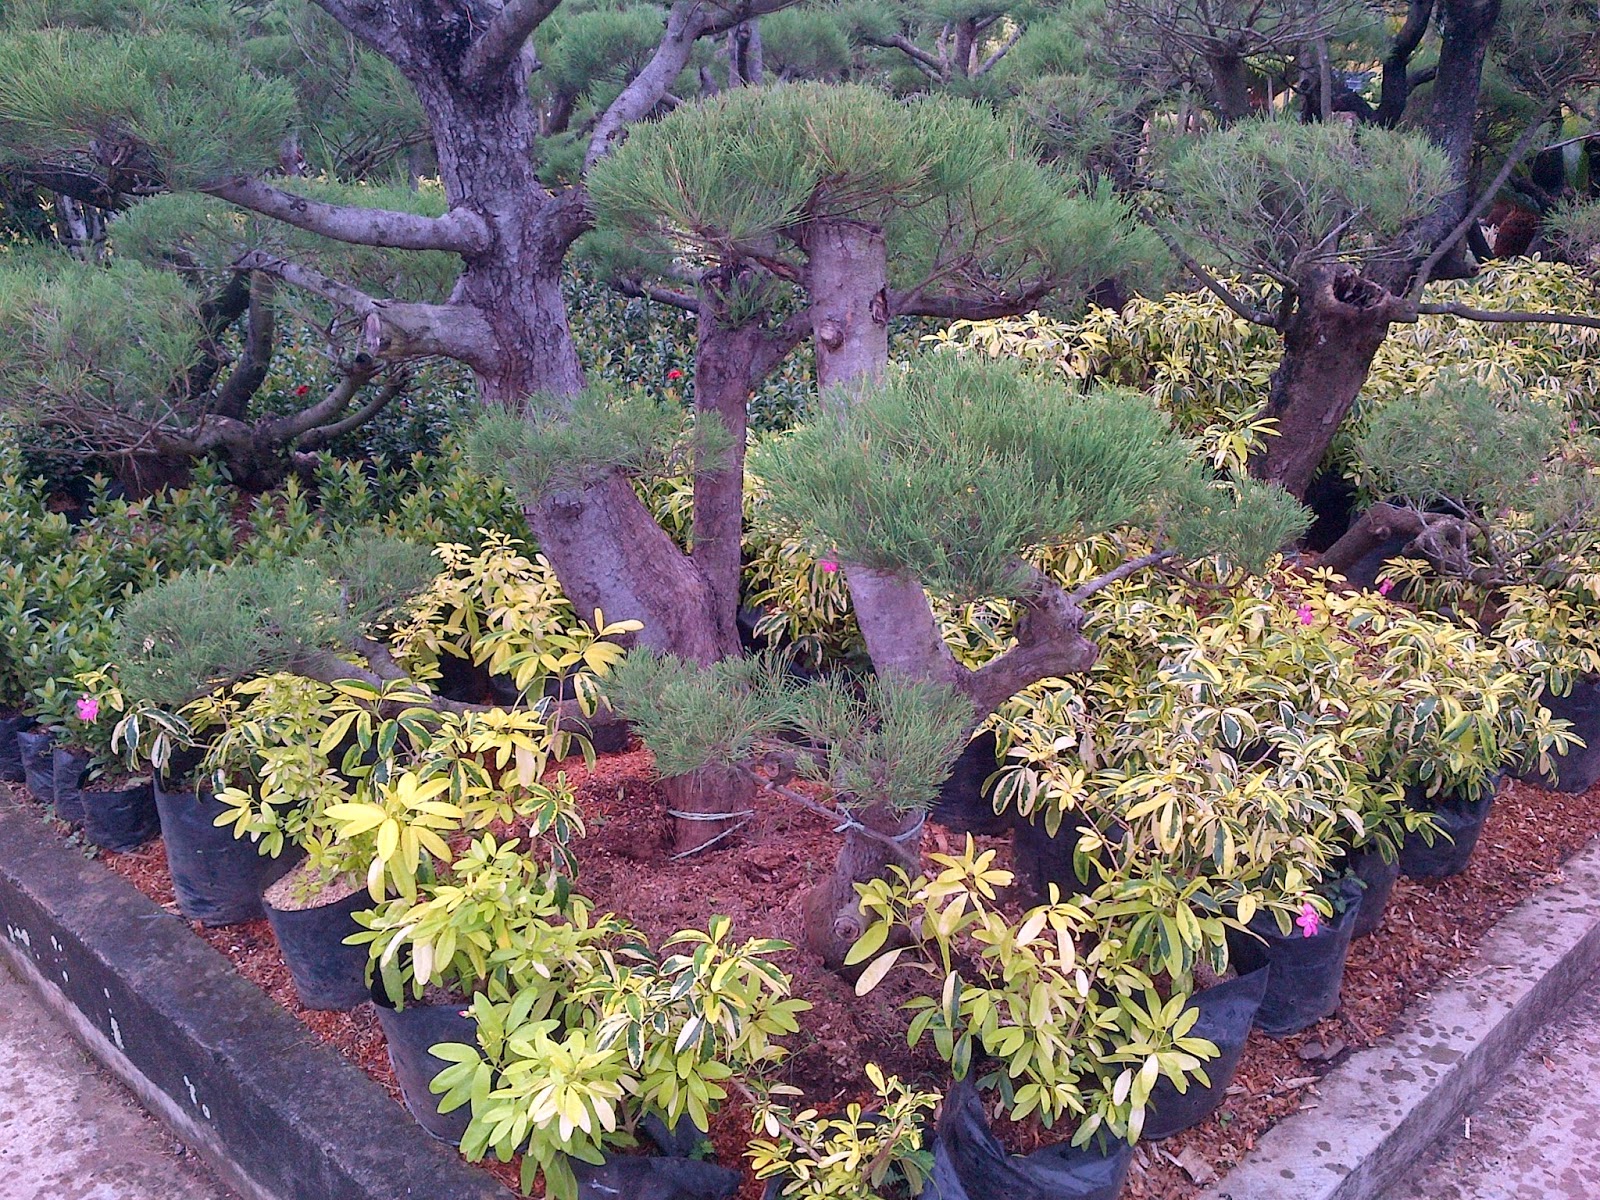 Jual cemara udang bonsai aneka tanaman hias untuk taman minimalis  Terbit Taman  082299130163